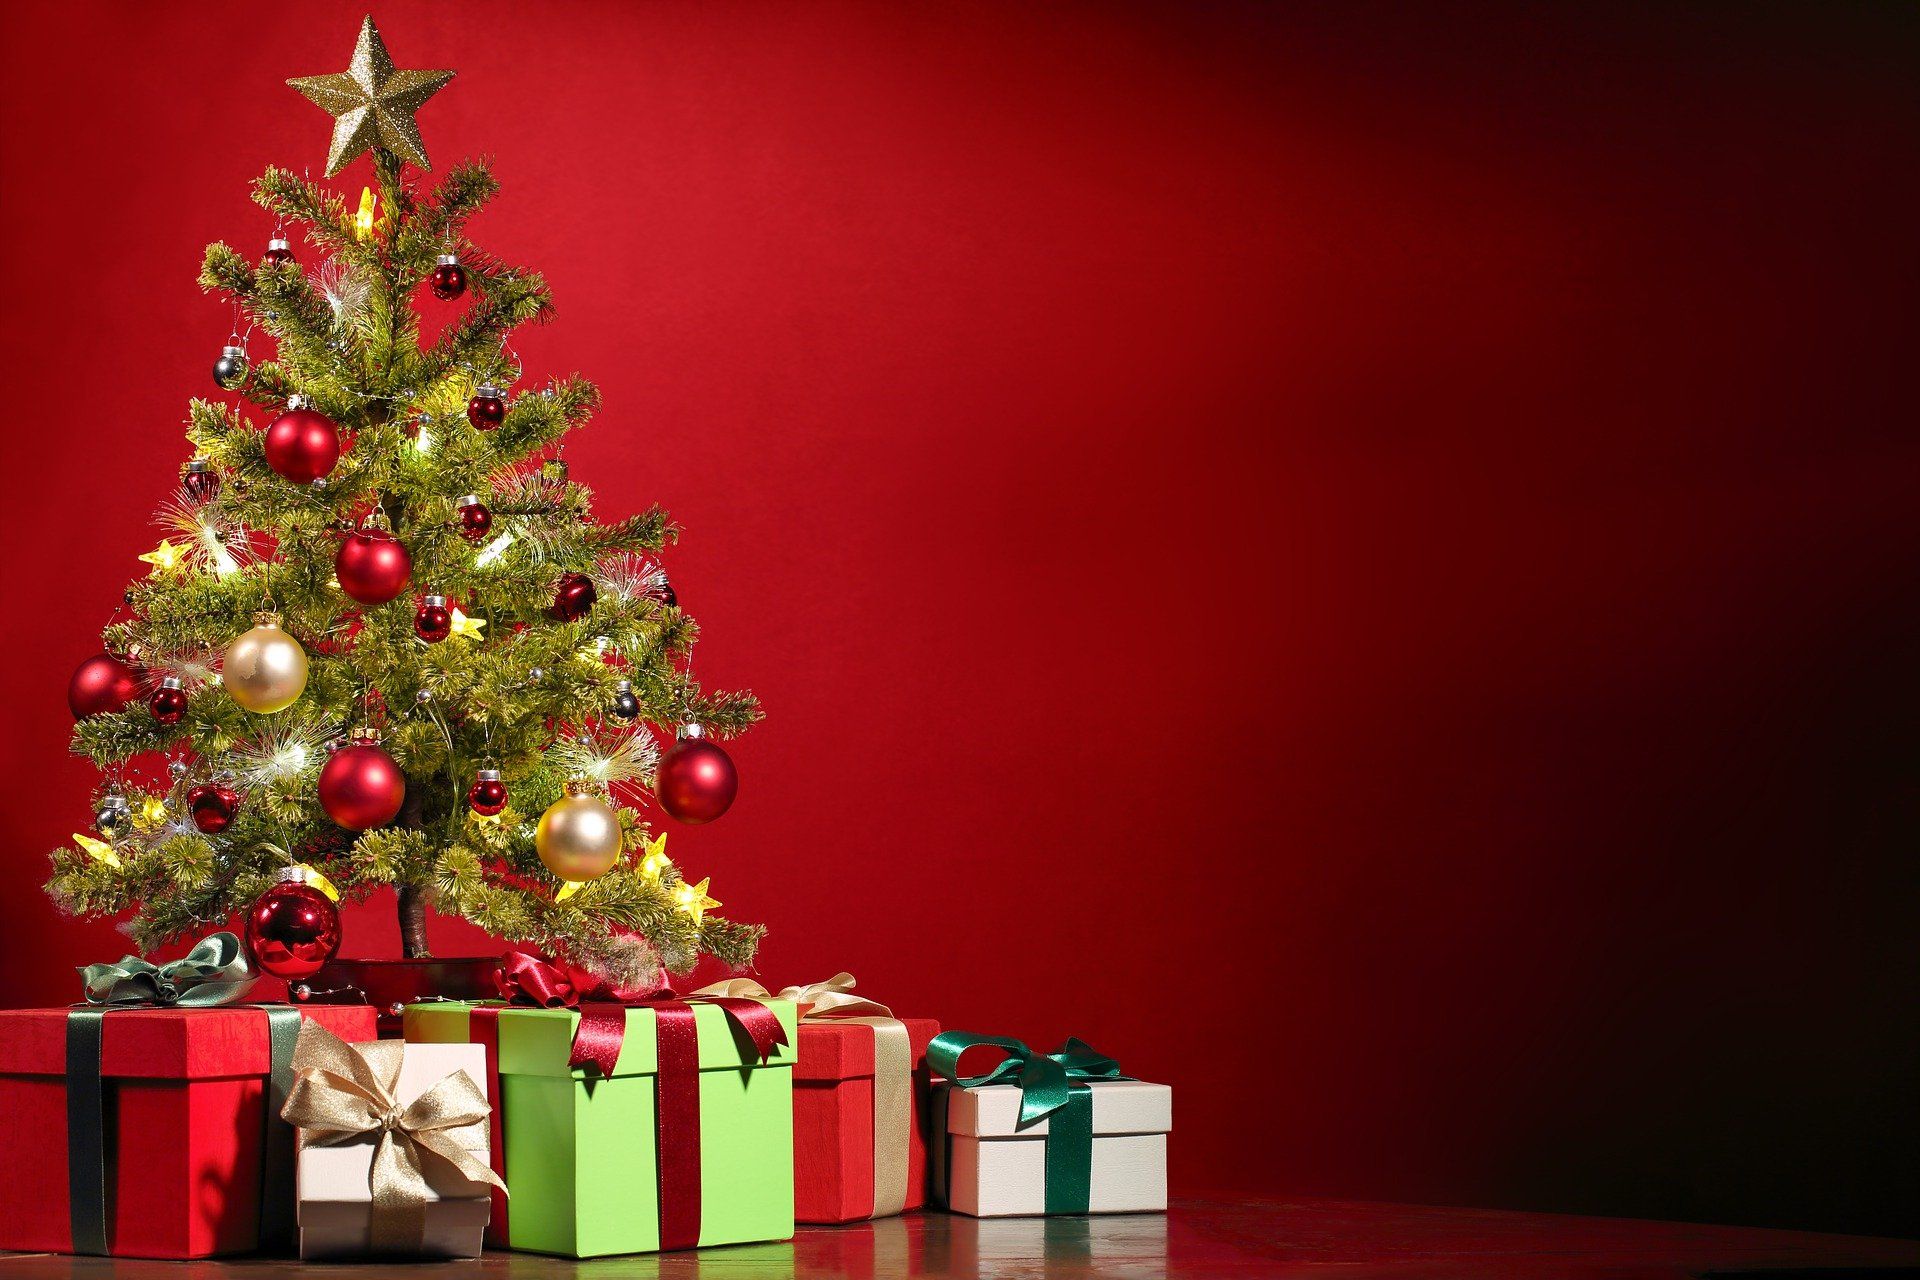 Top 5 Christmas carols for the holiday season